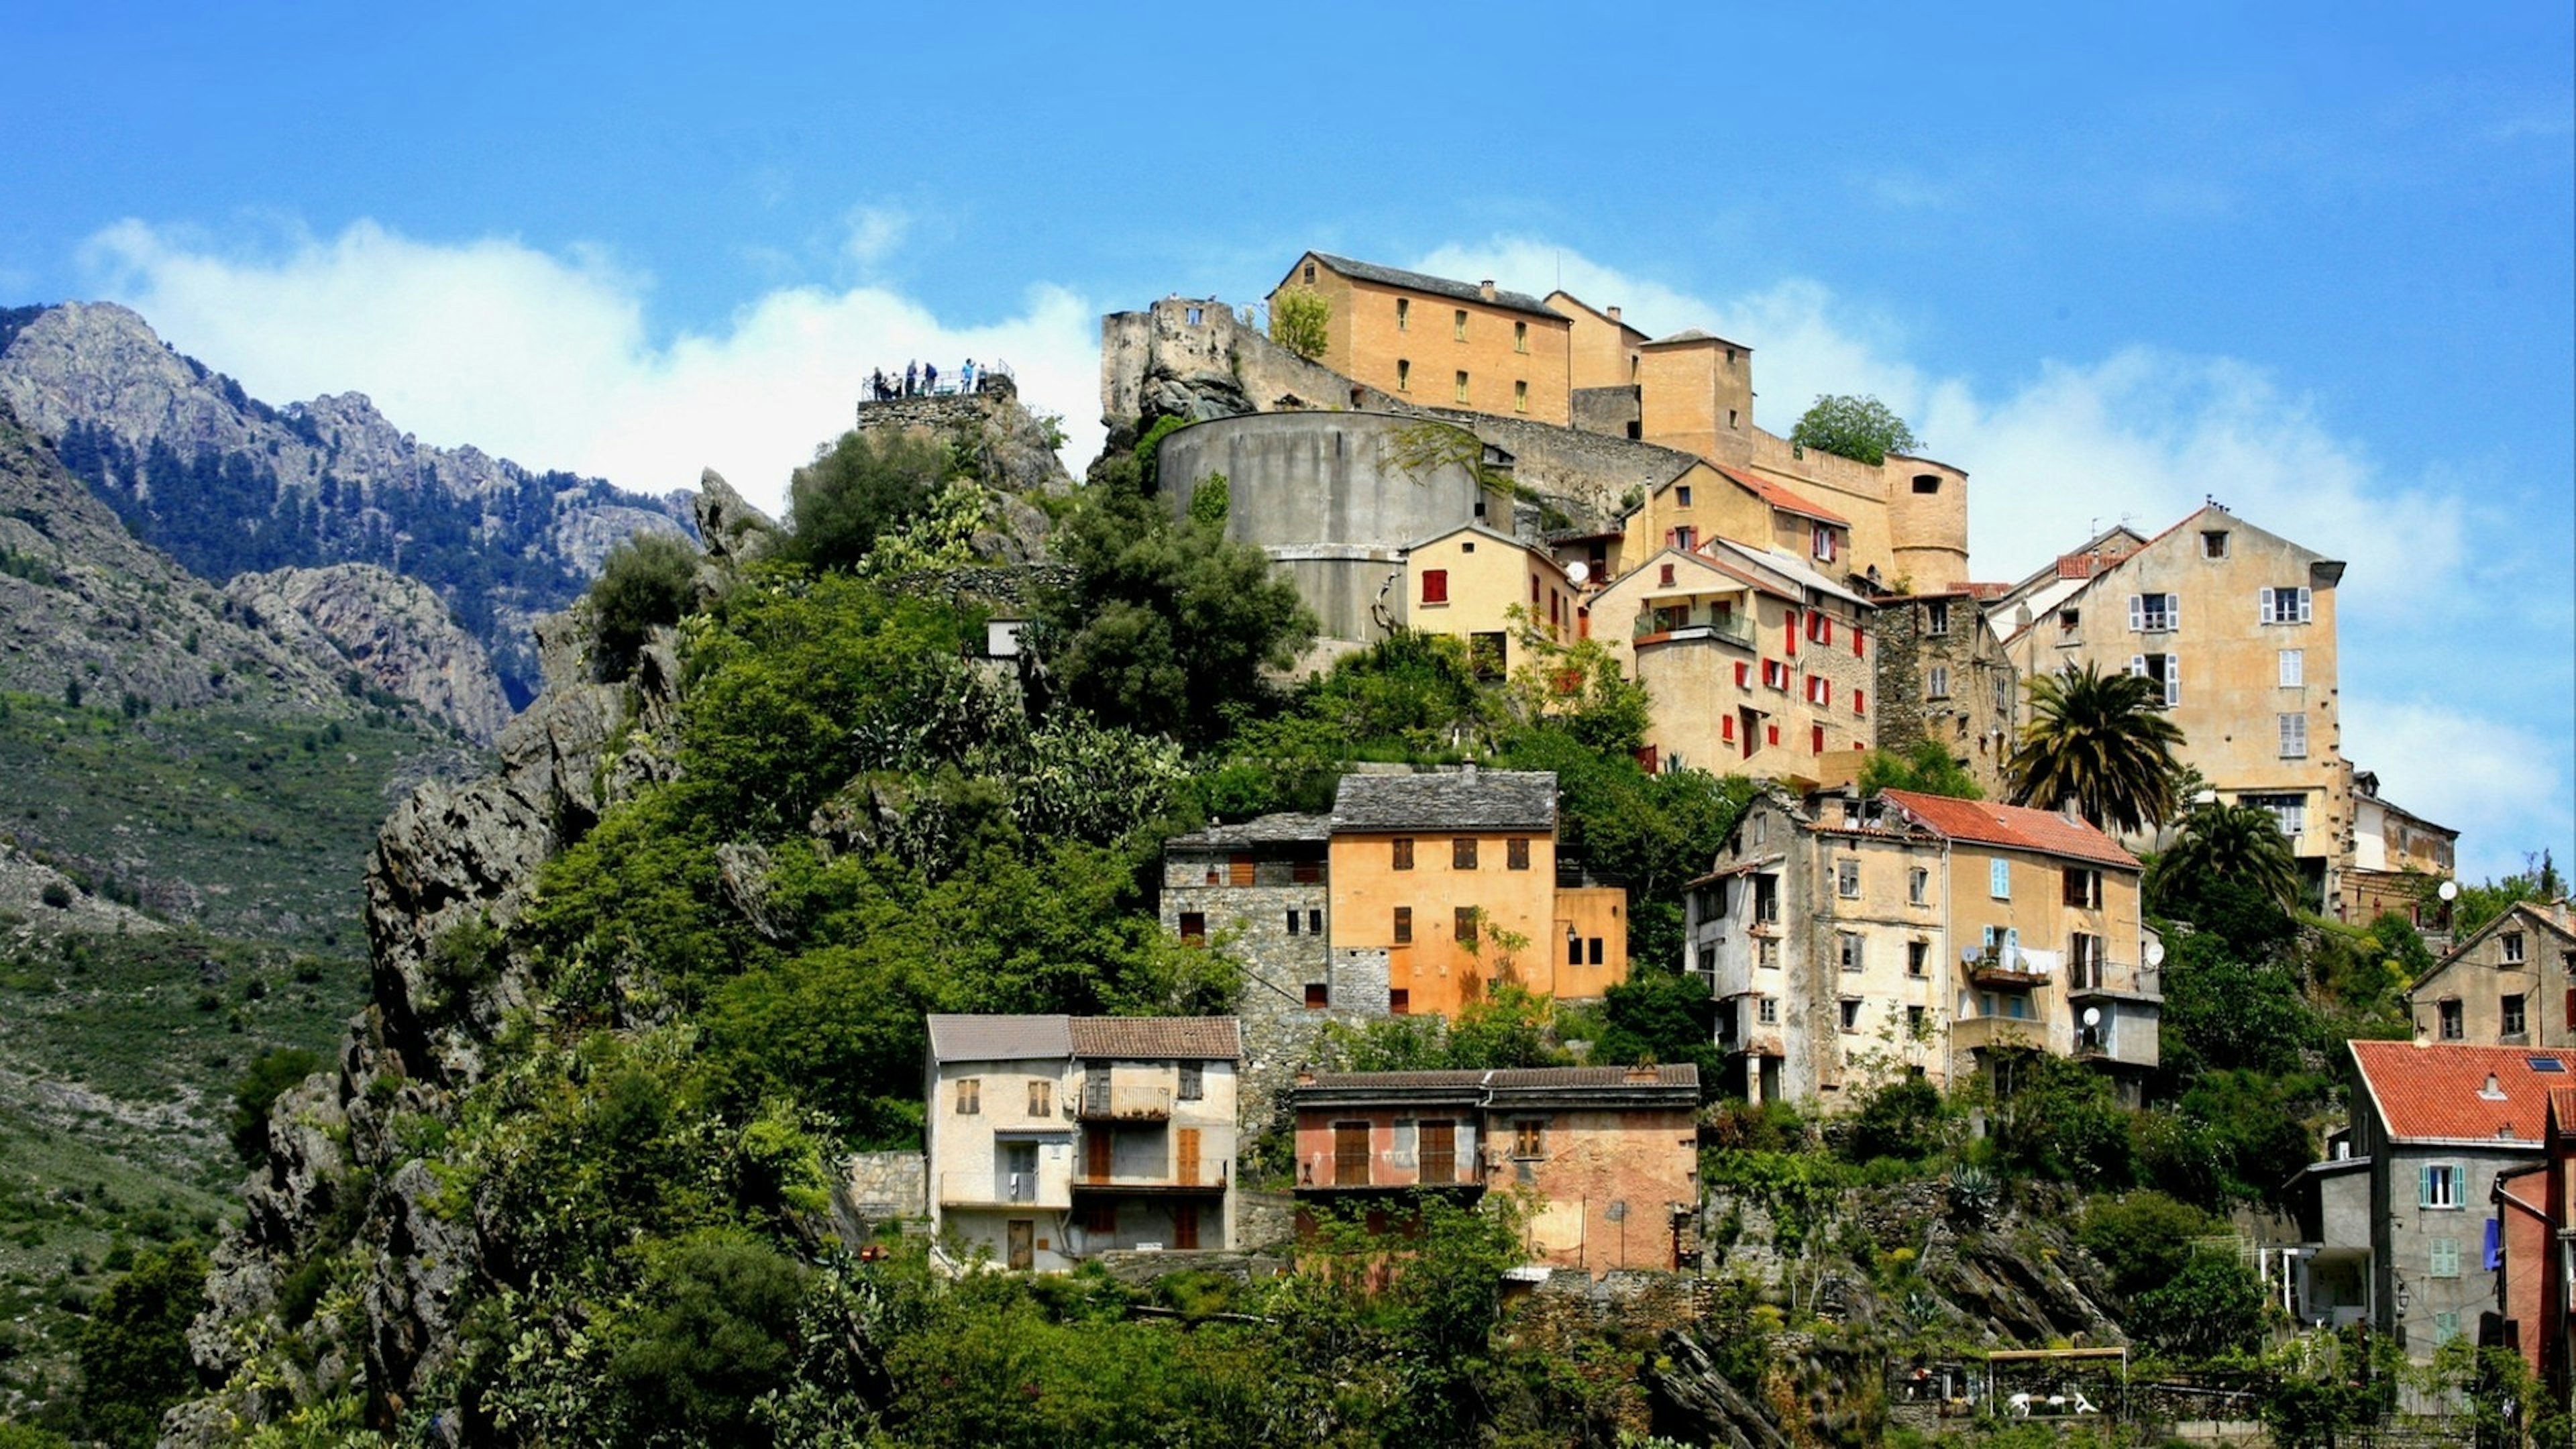 Village of Corte, Corsica island, France